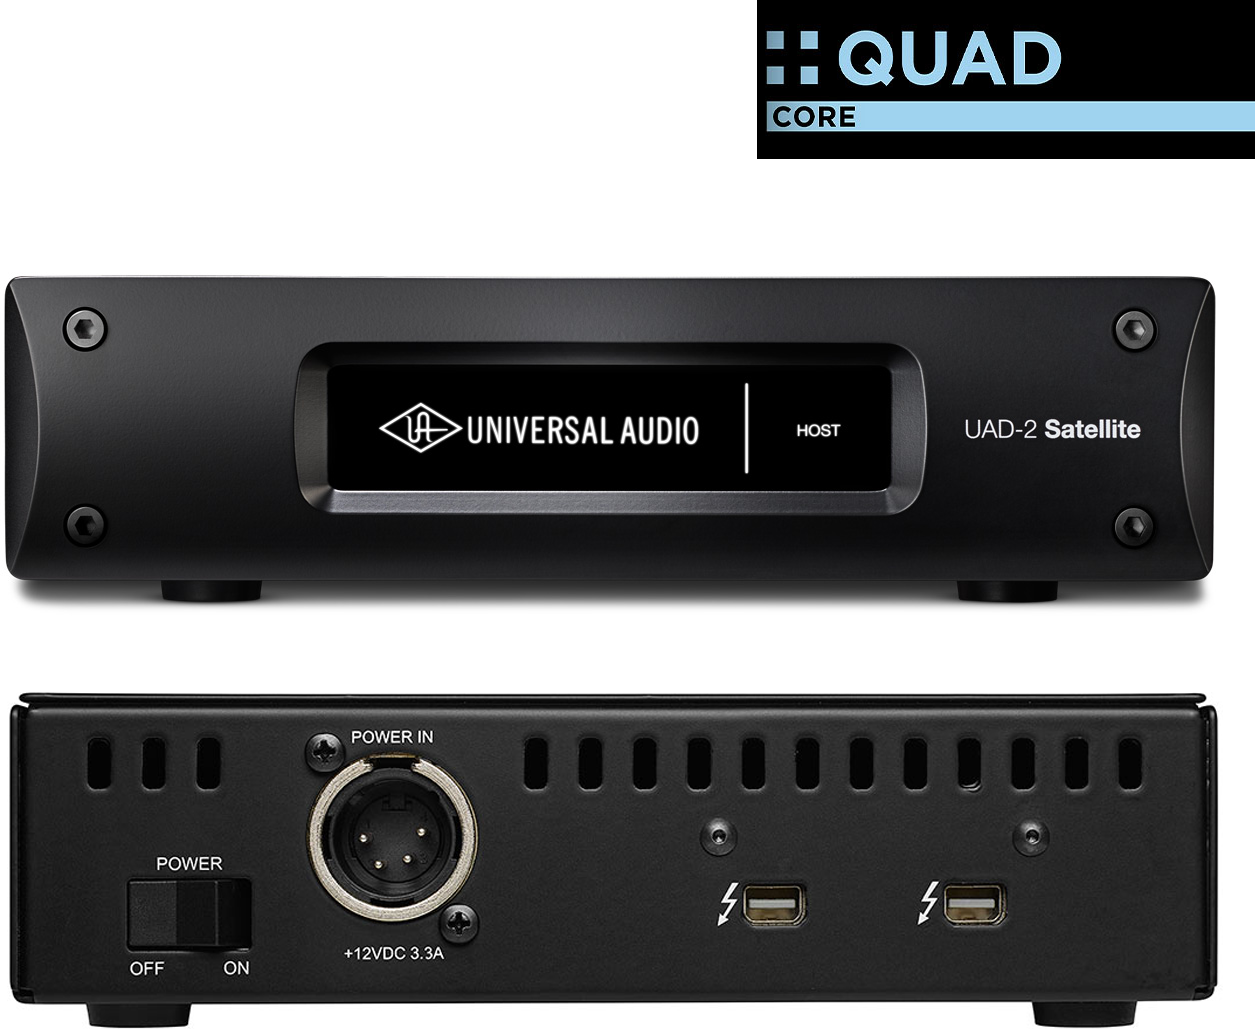 Universal Audio Uad-2 Satellite Thunderbolt Quad Core - Thunderbolt audio interface - Main picture